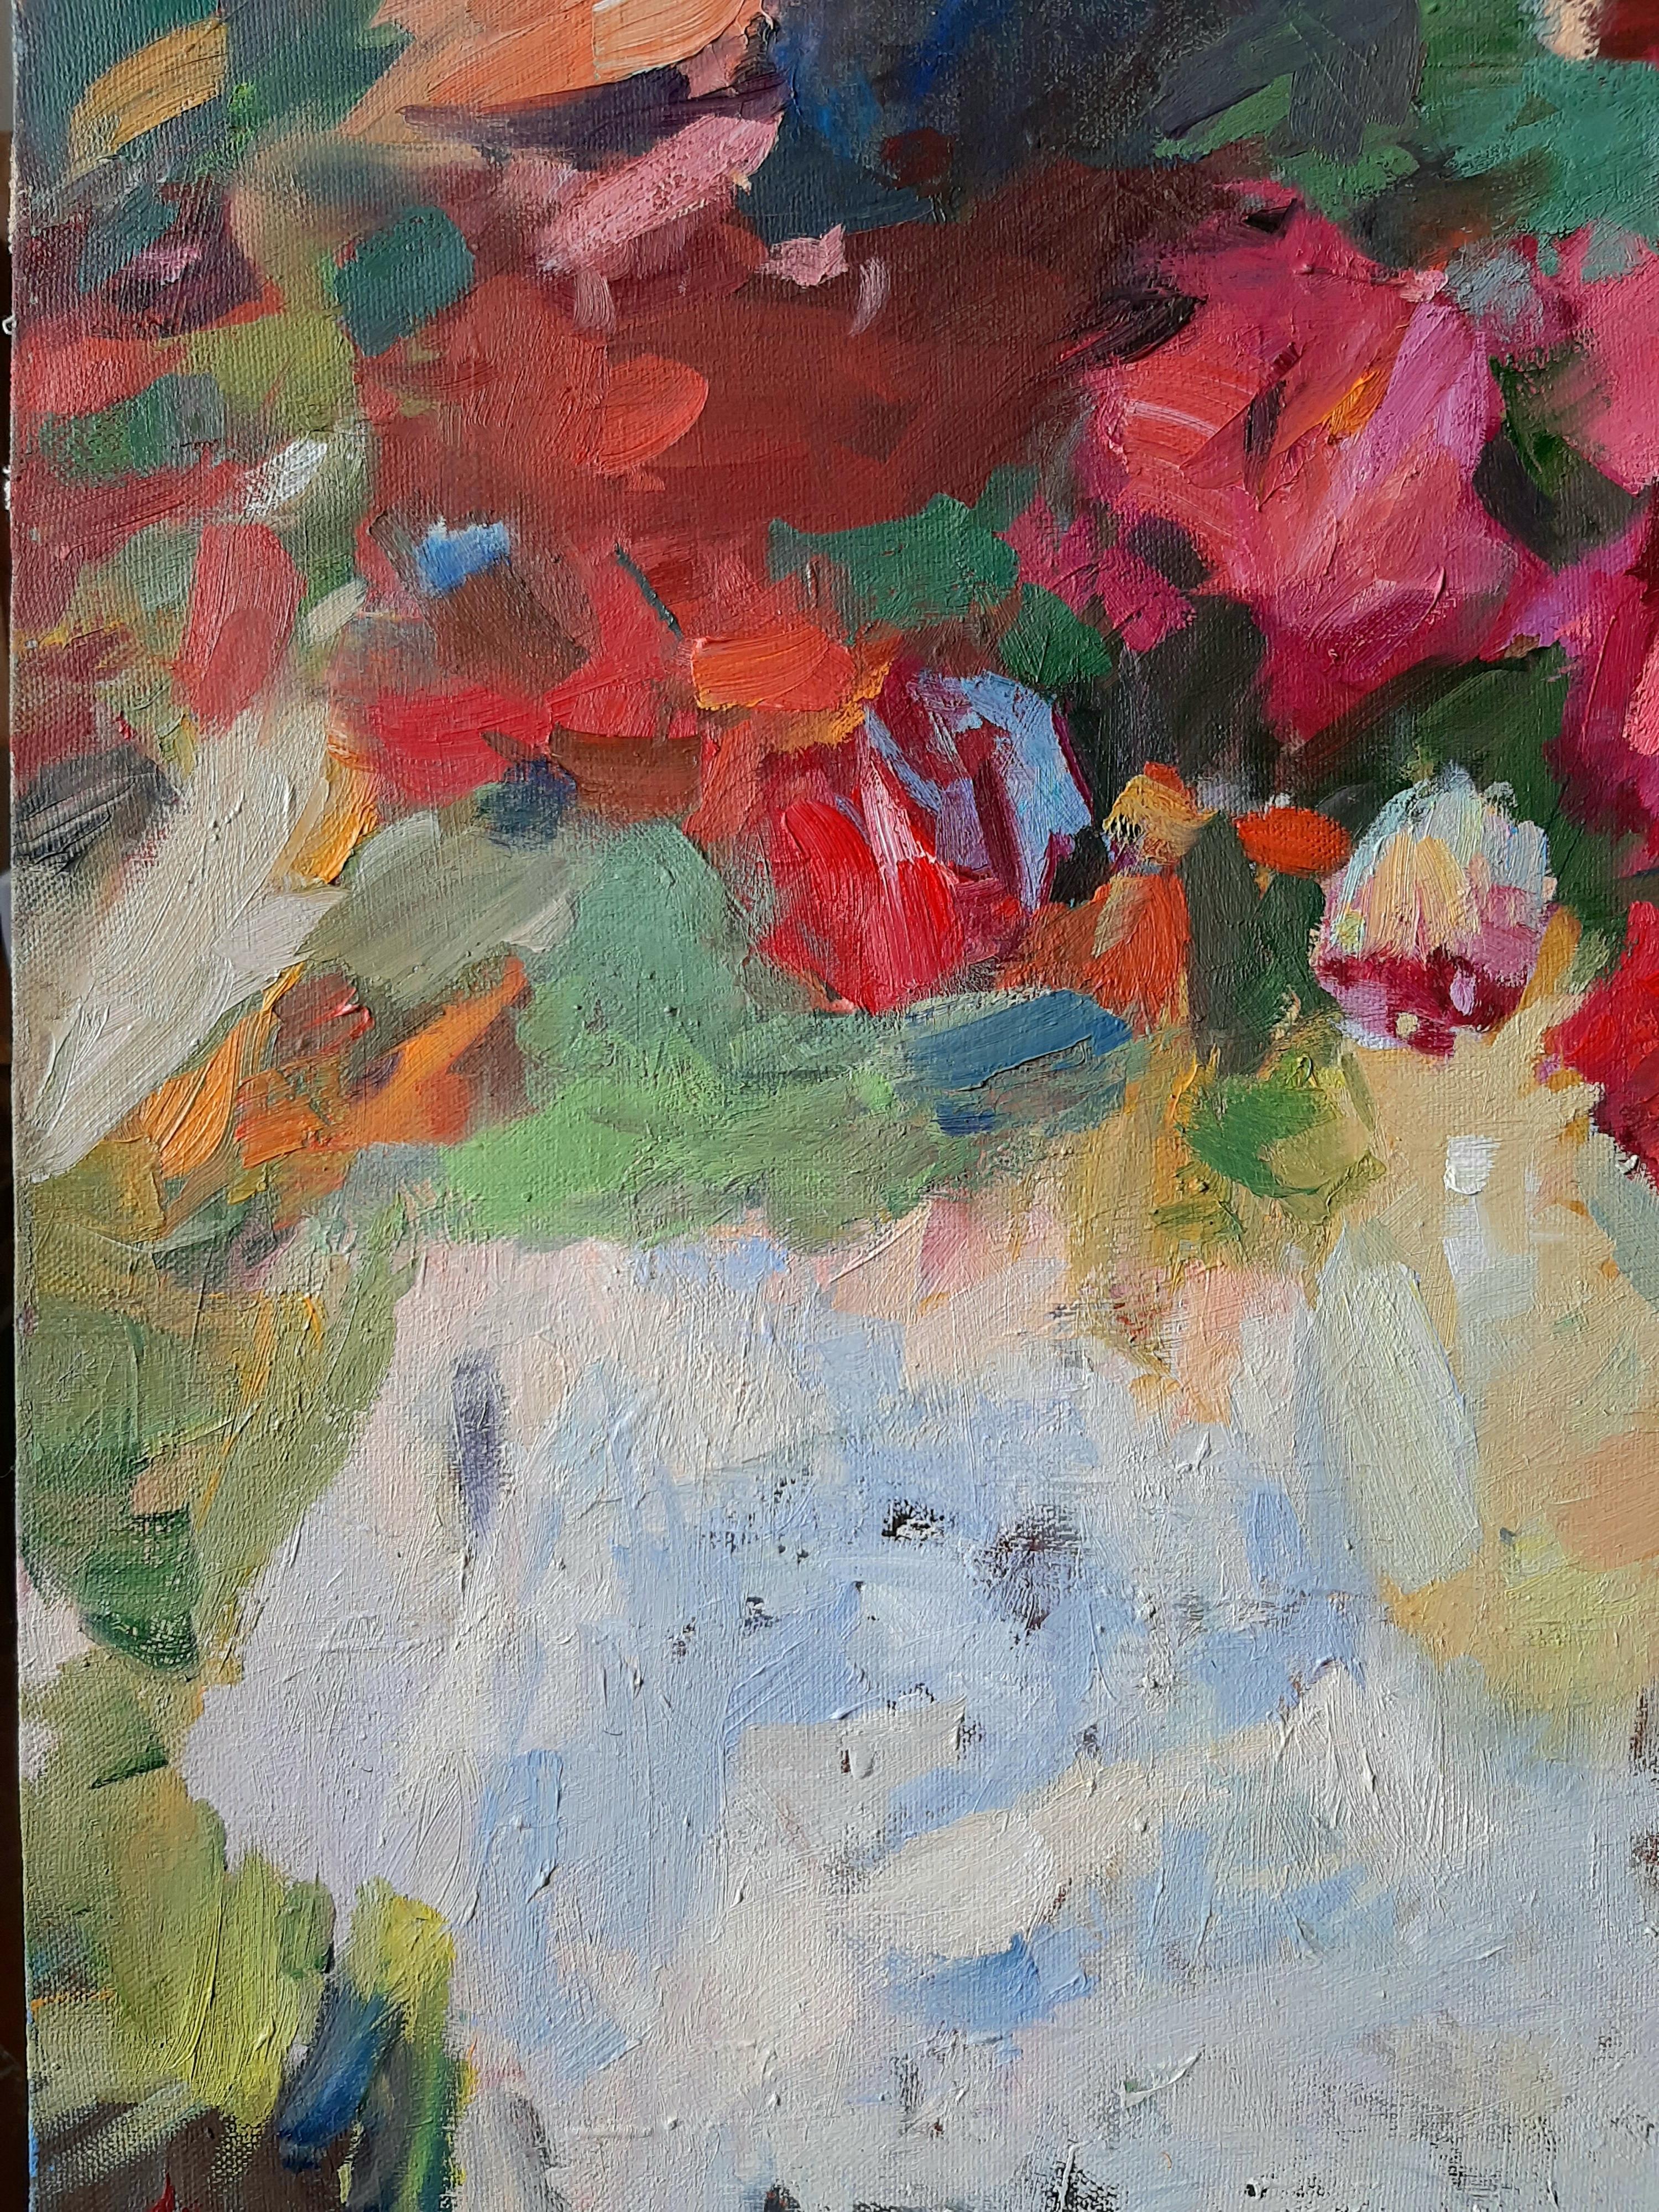 July Roses - Stillleben, Ölgemälde auf Leinwand in Rot, Blau, Gelb, Grün, Weiß und Lila (Impressionismus), Painting, von Valeriy Zalishchuk